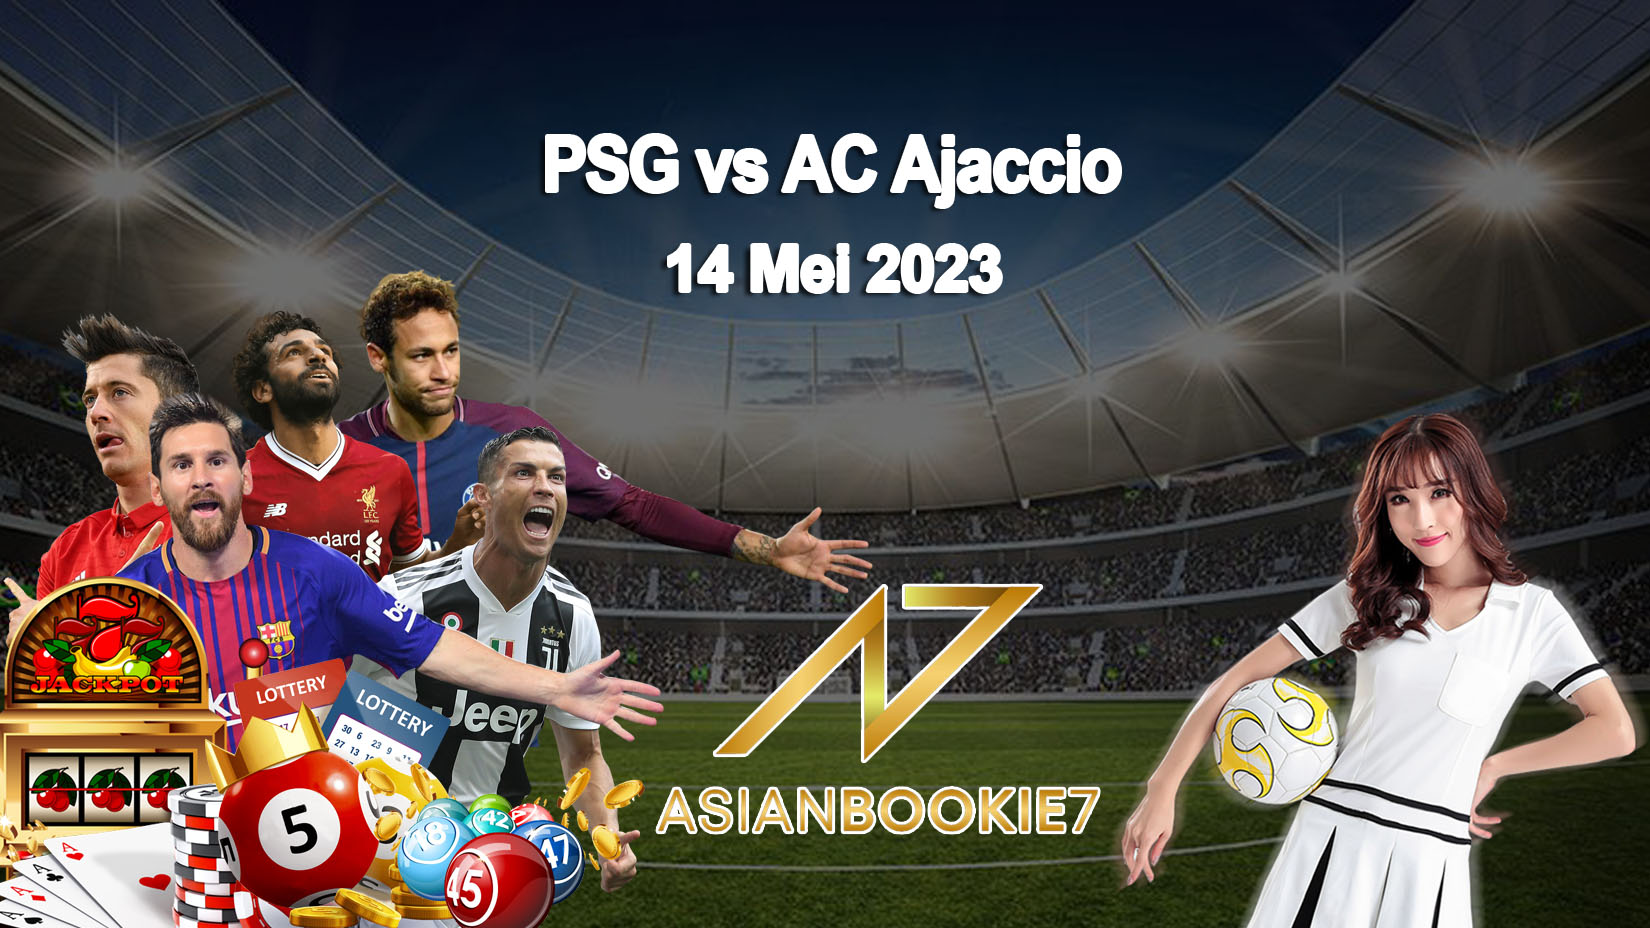 Prediksi PSG vs AC Ajaccio 14 Mei 2023